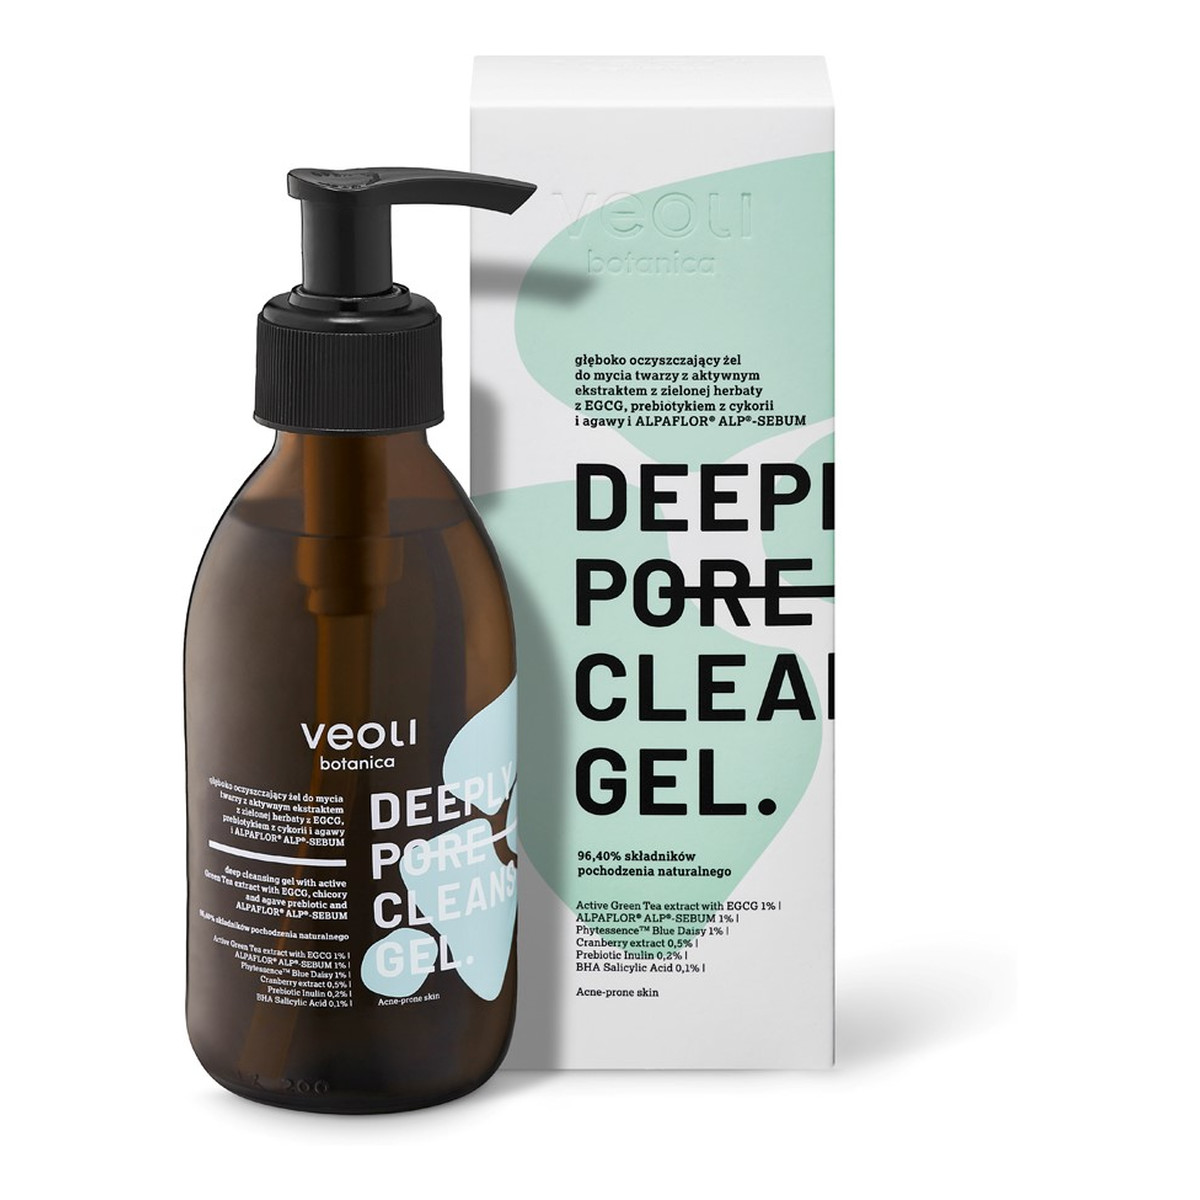 Veoli Botanica Deeply Pore Cleansing Gel głęboko oczyszczający Żel do mycia twarzy z ekstraktem z zielonej herbaty 200ml